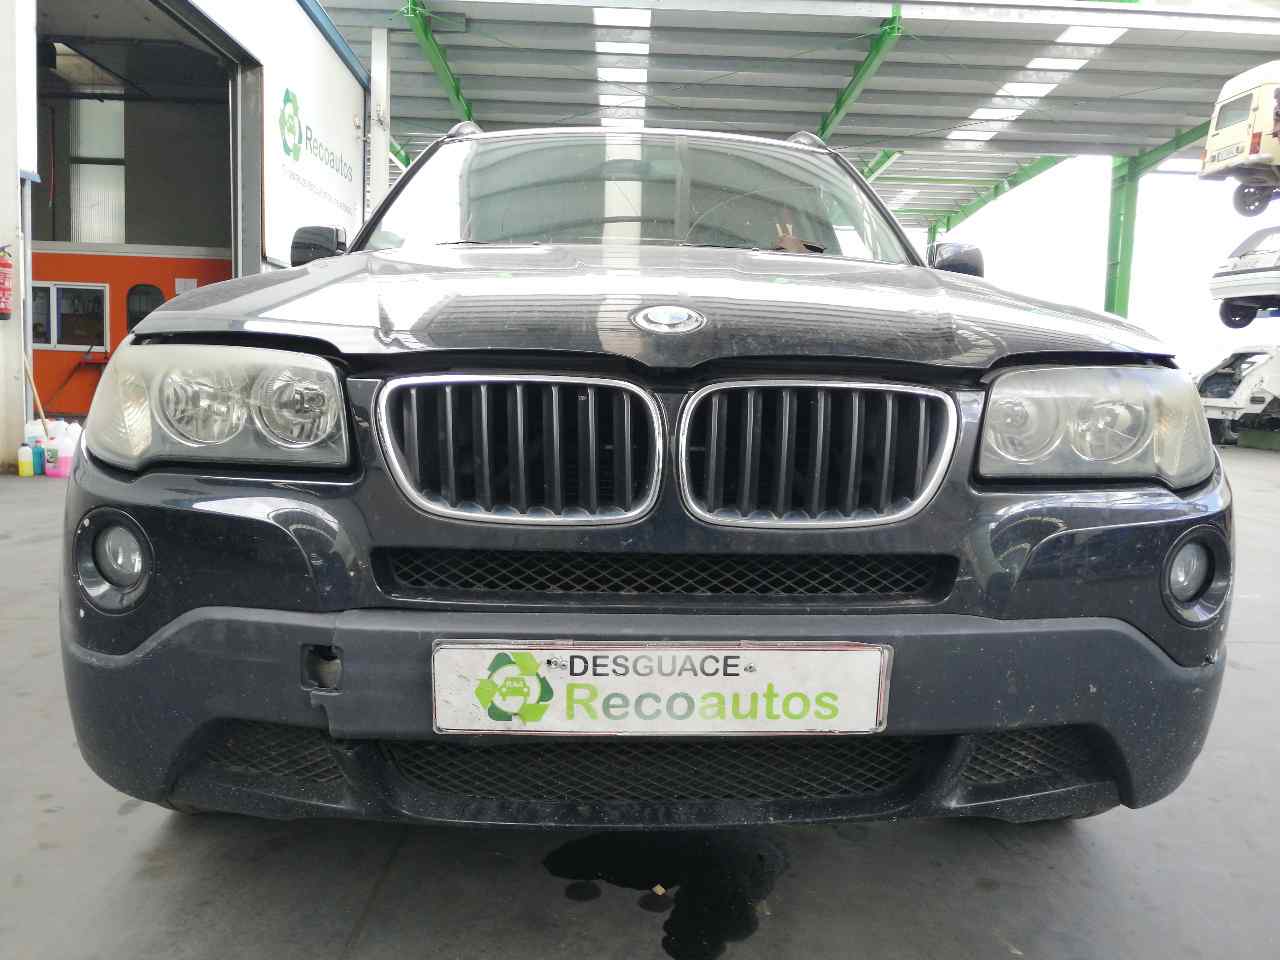 BMW X3 E83 (2003-2010) Front Left Door 41003451015, NEGRA, 5PUERTAS 21705504